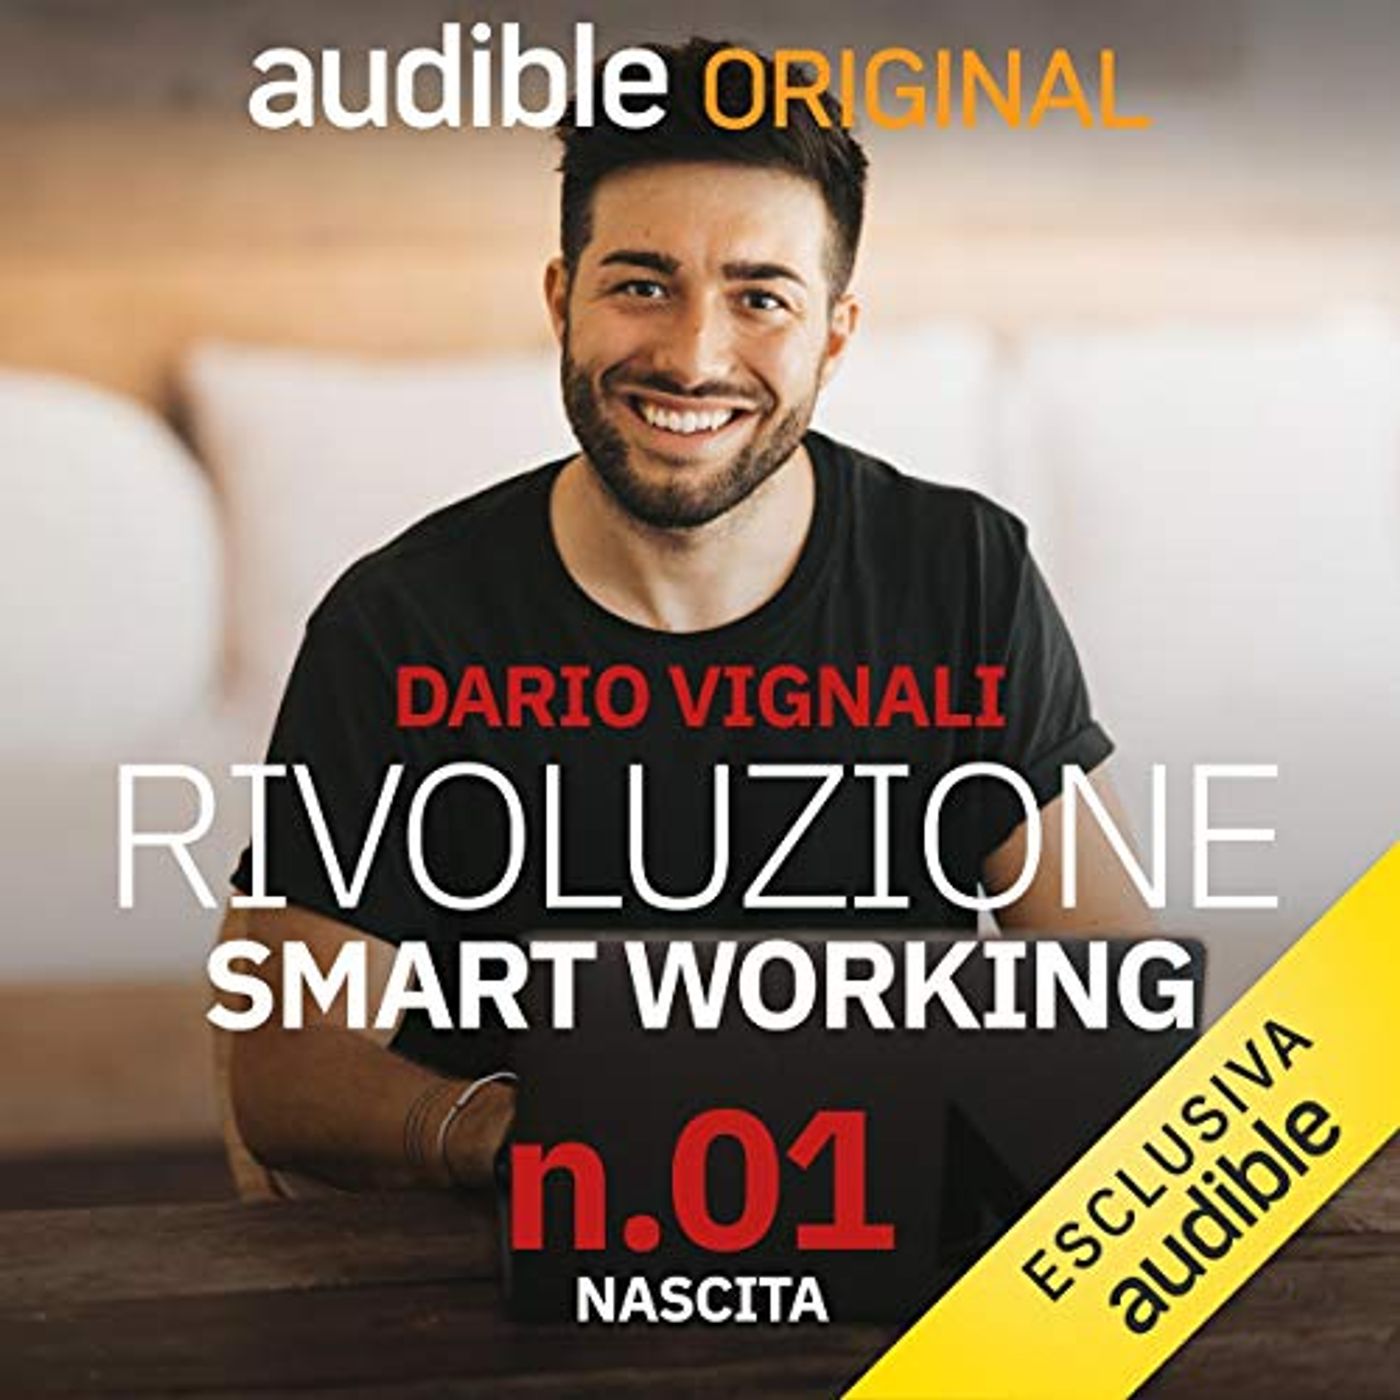 Rivoluzione Smart Working. Nascita - Dario Vignali